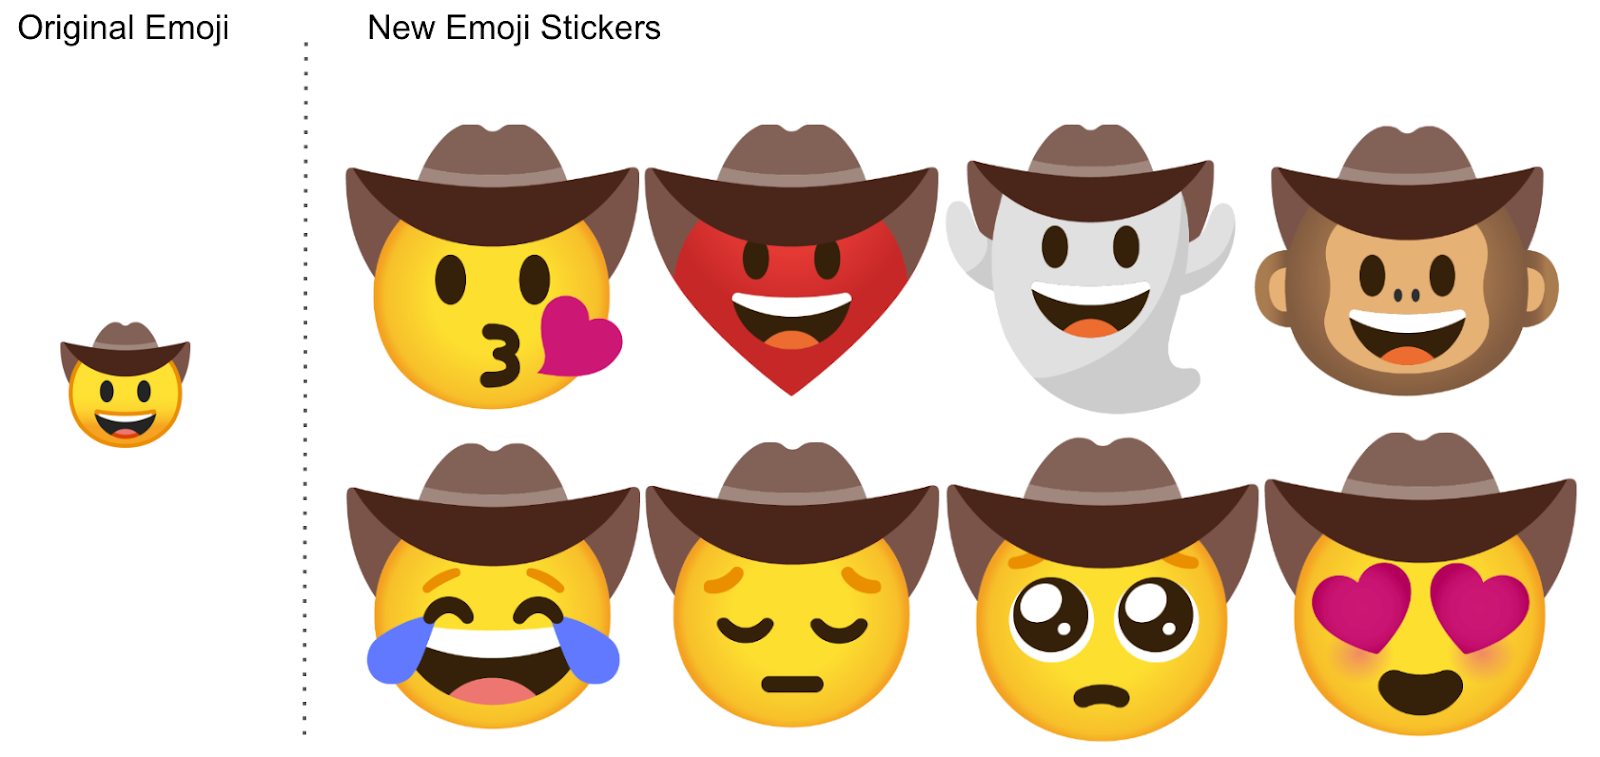 cueva Sabueso Típicamente Blog Oficial de Google España: ¿Tienes diferentes sentimientos? Hay un emoji  para cada uno de ellos